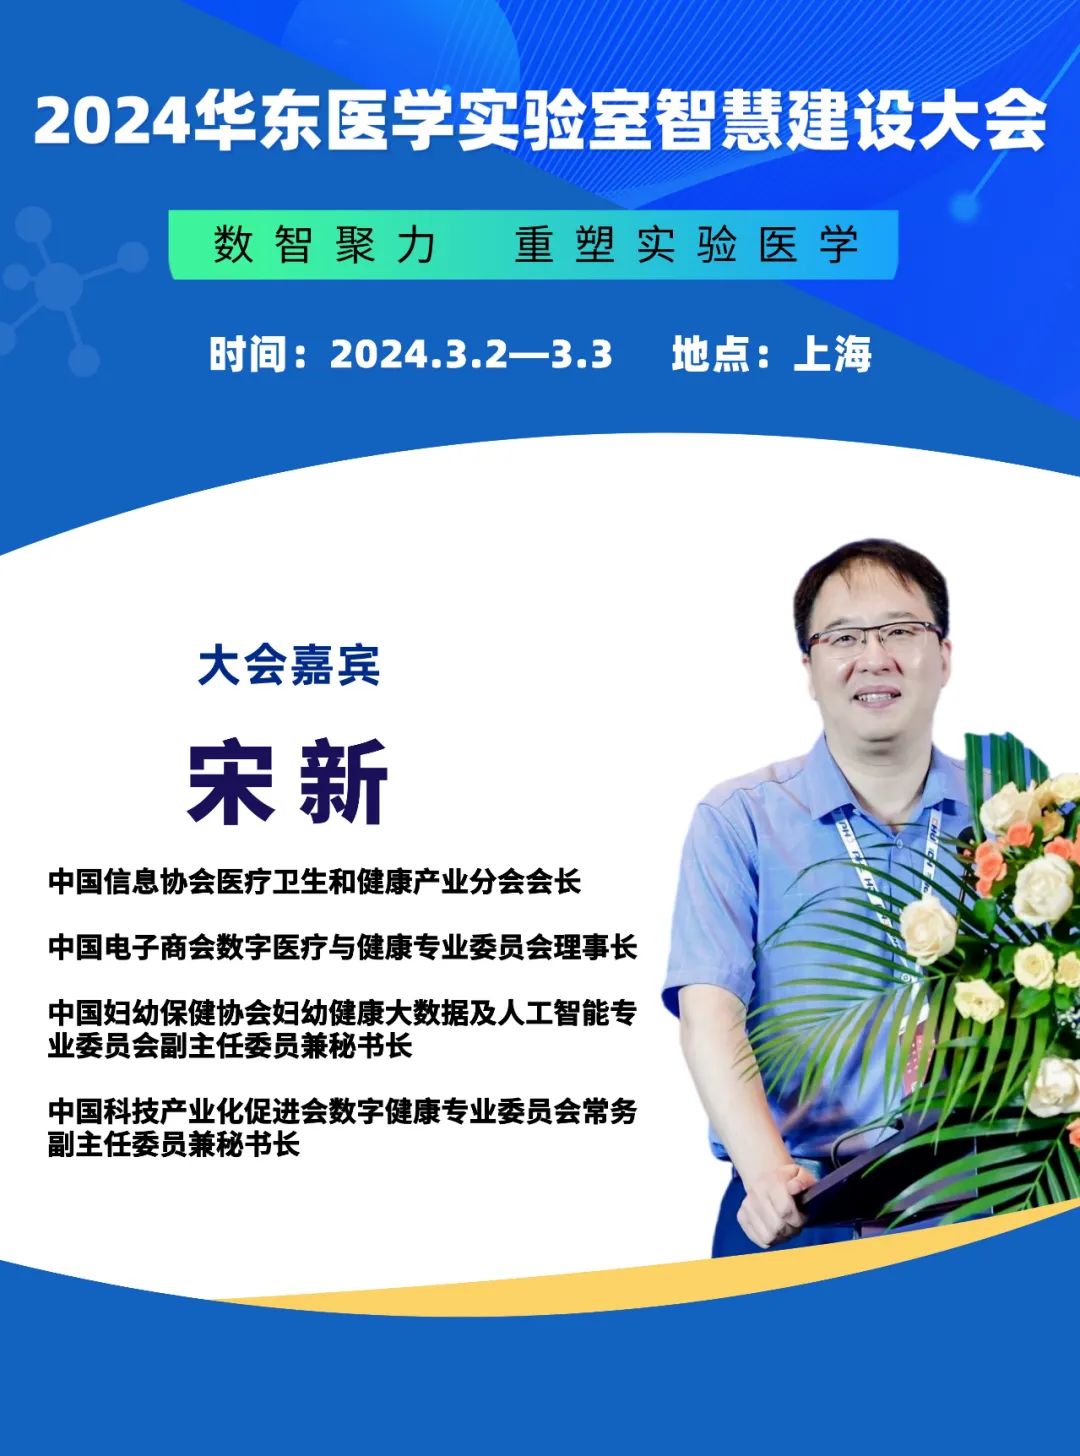 2024华东医学实验室智慧建设大会更新演讲嘉宾